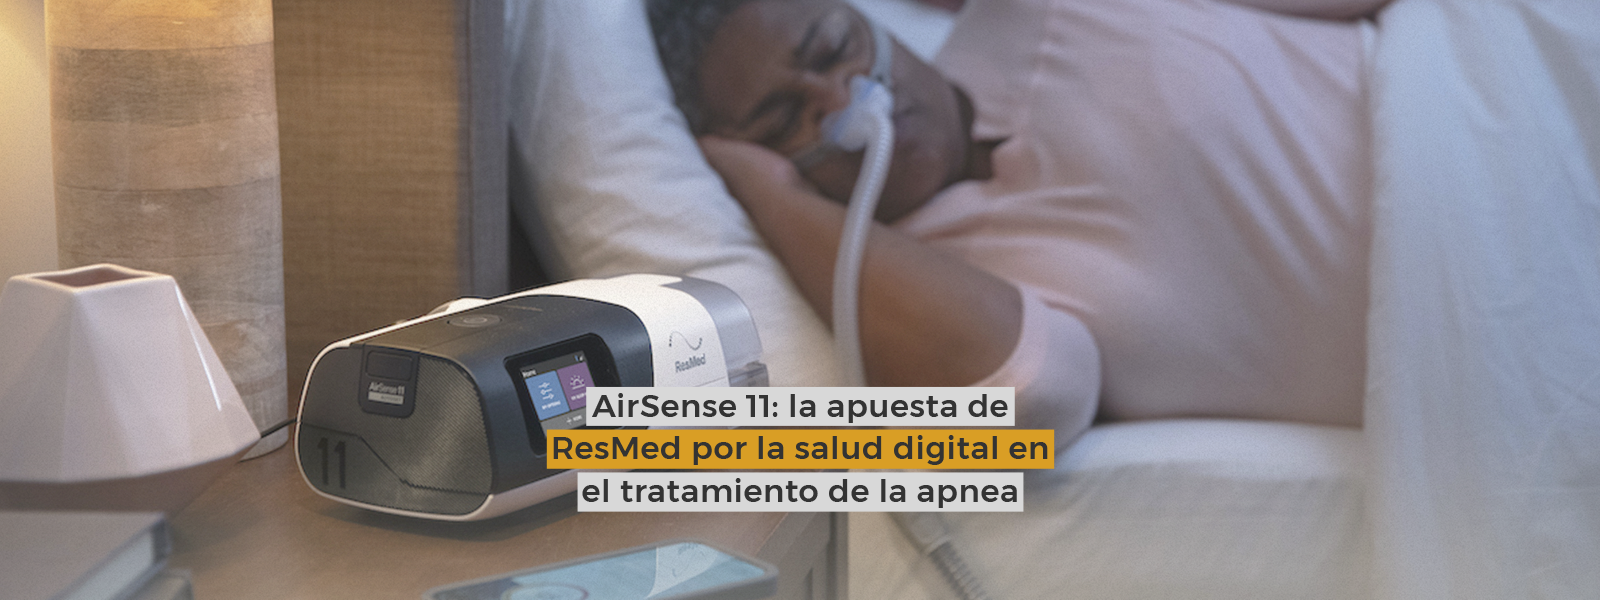 AirSense 11: la apuesta de ResMed por la salud digital en el tratamiento de la apnea